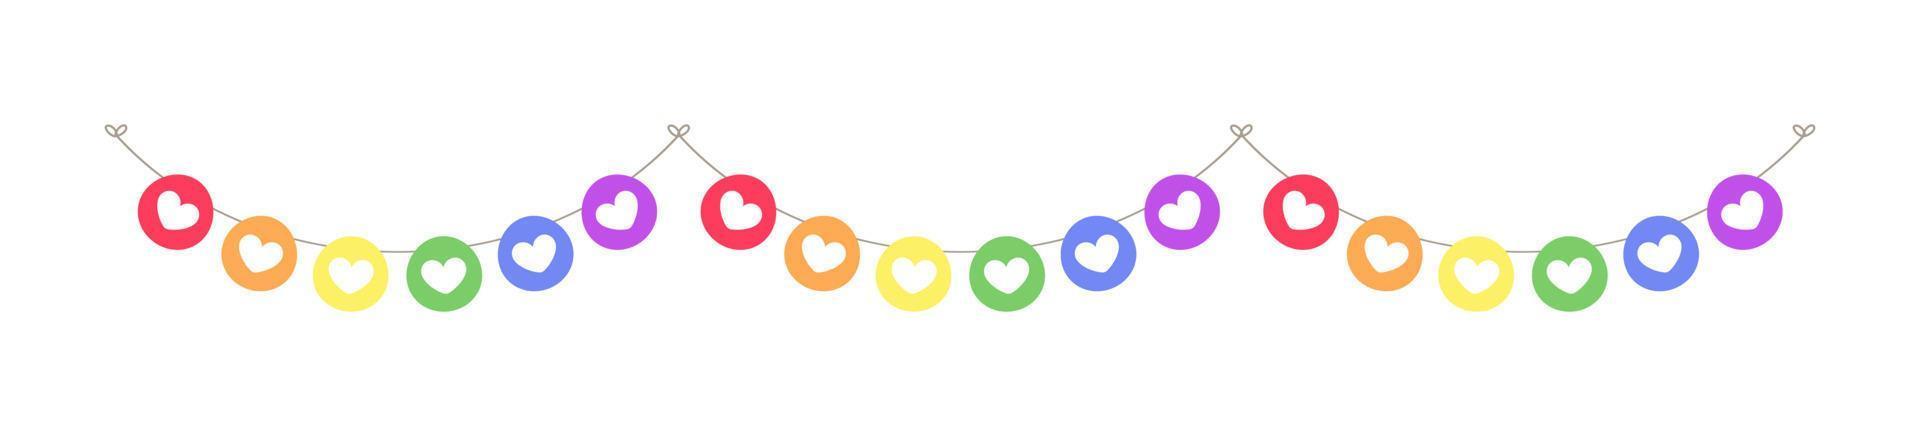 regenboog harten trots maand slinger vlaggedoek verdeler gemakkelijk vector illustratie clip art